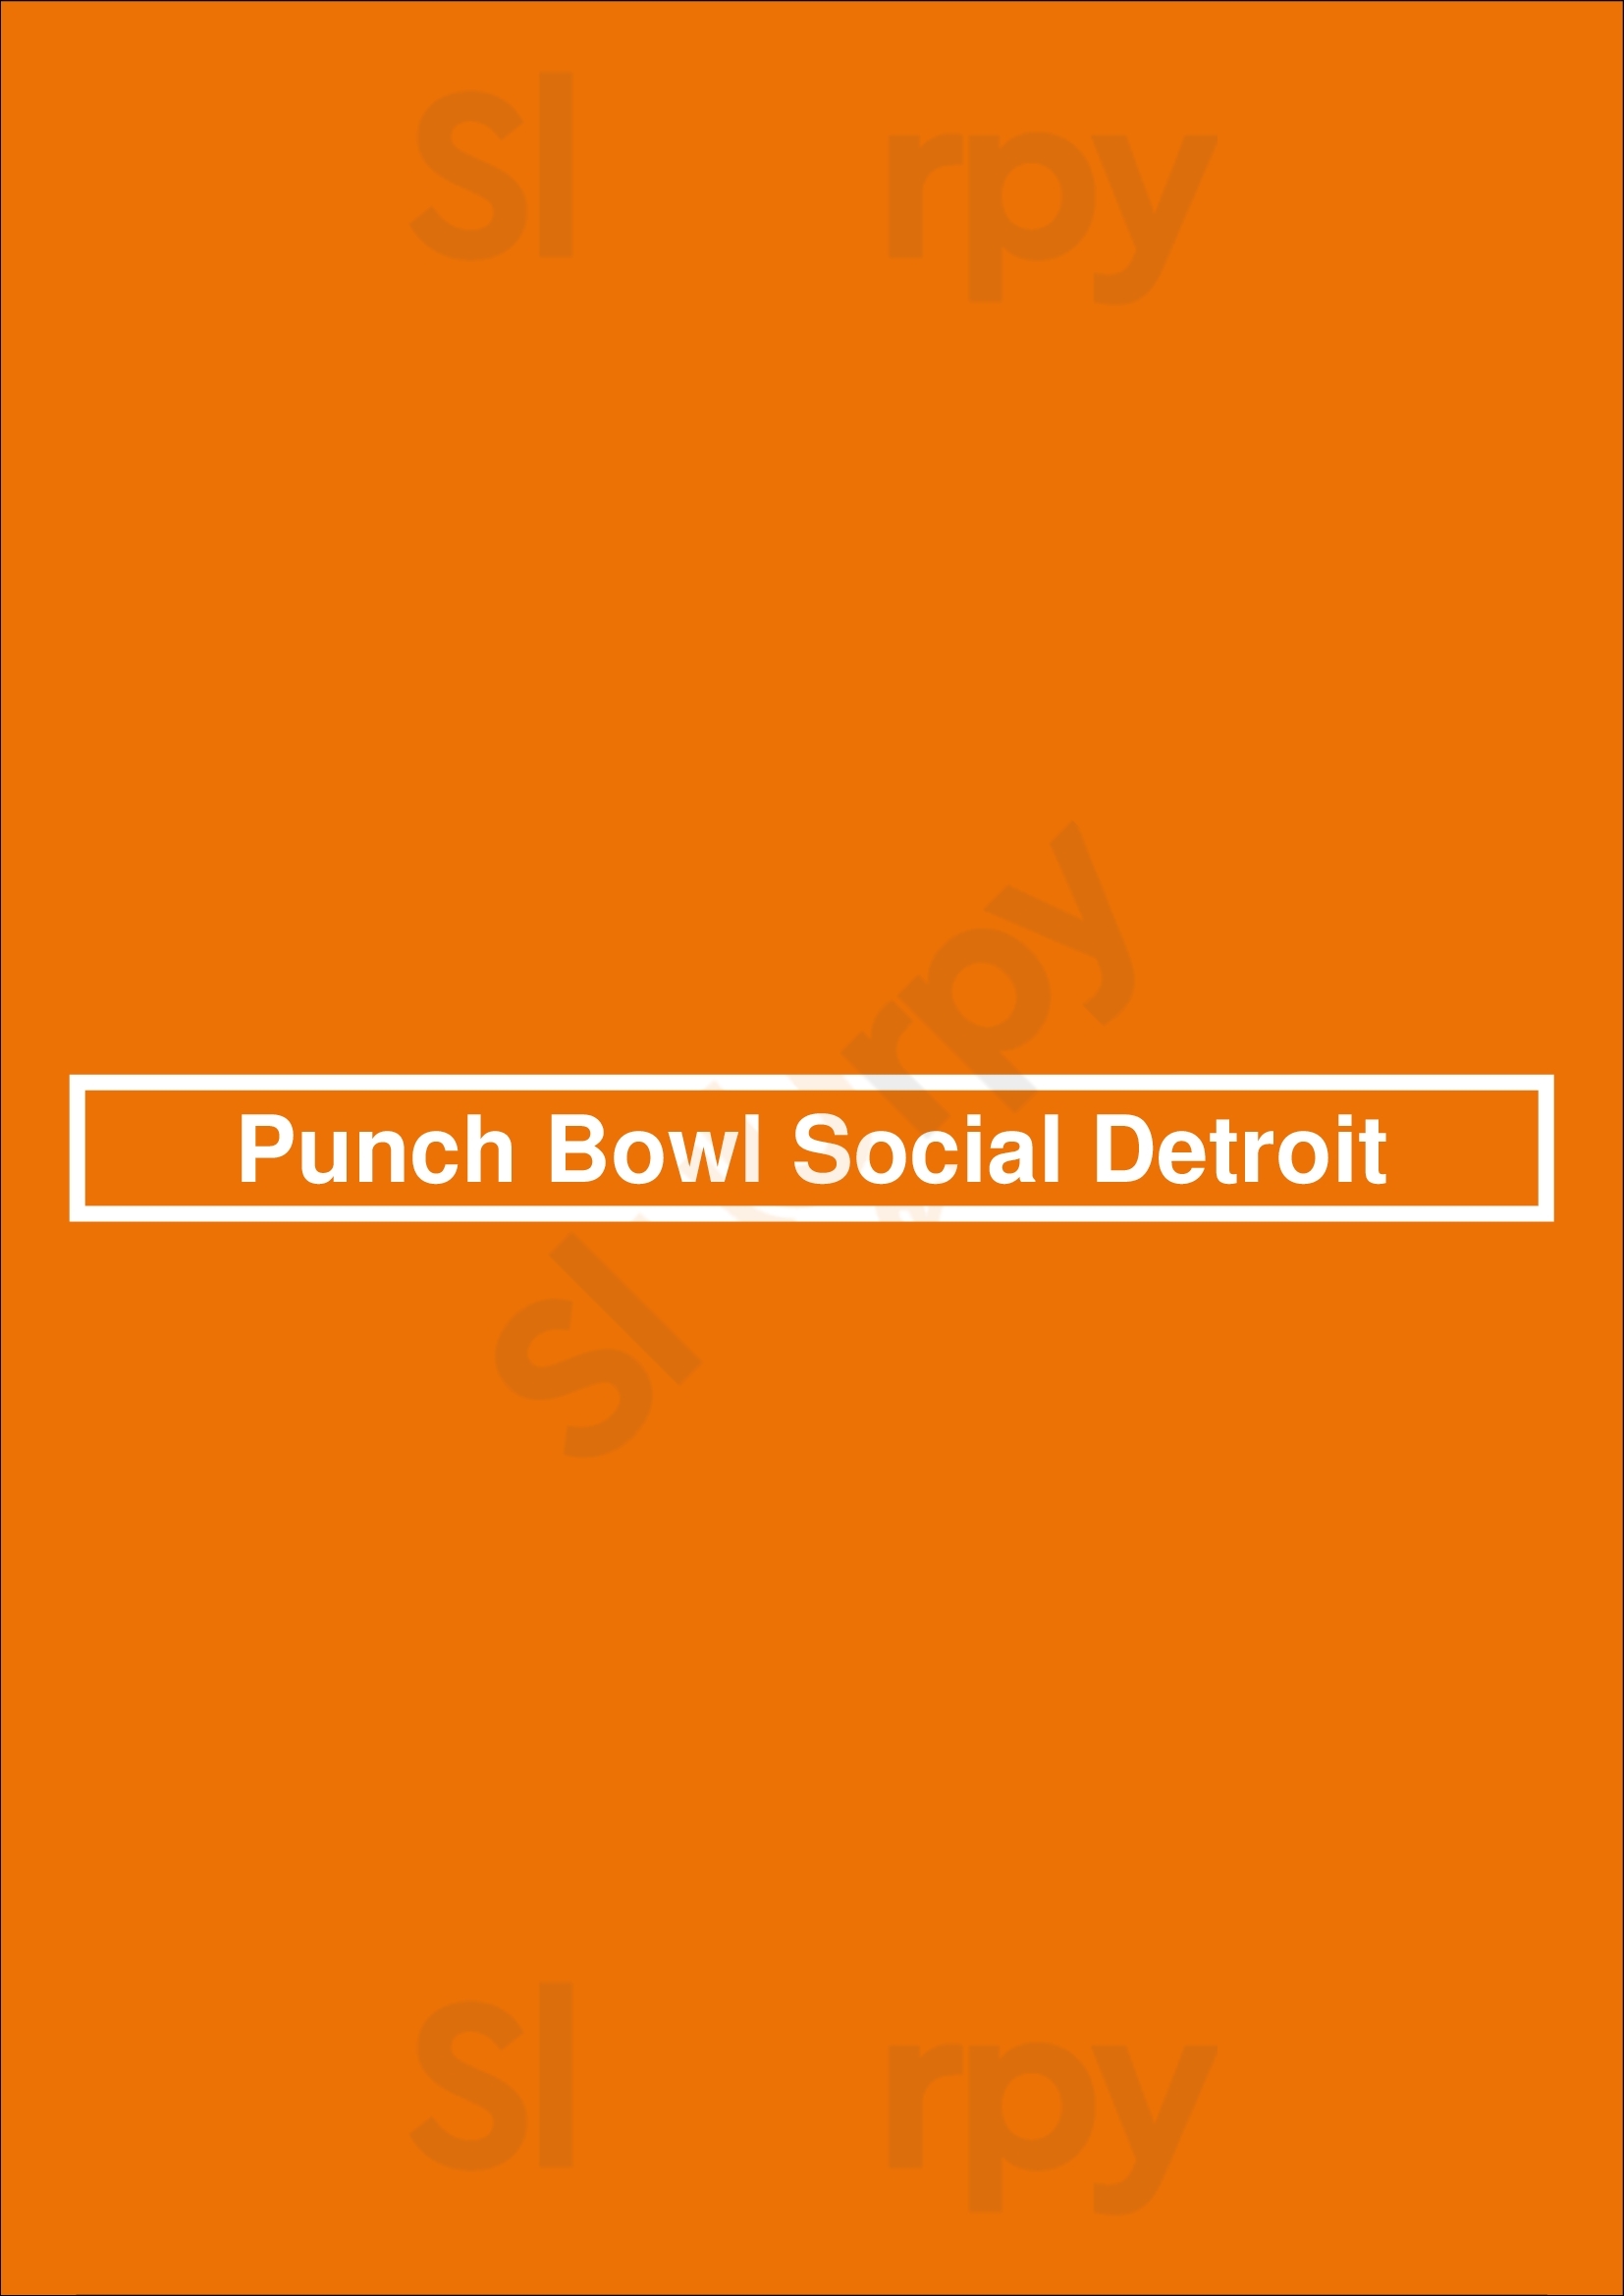 Punch Bowl Social Detroit Detroit Menu - 1